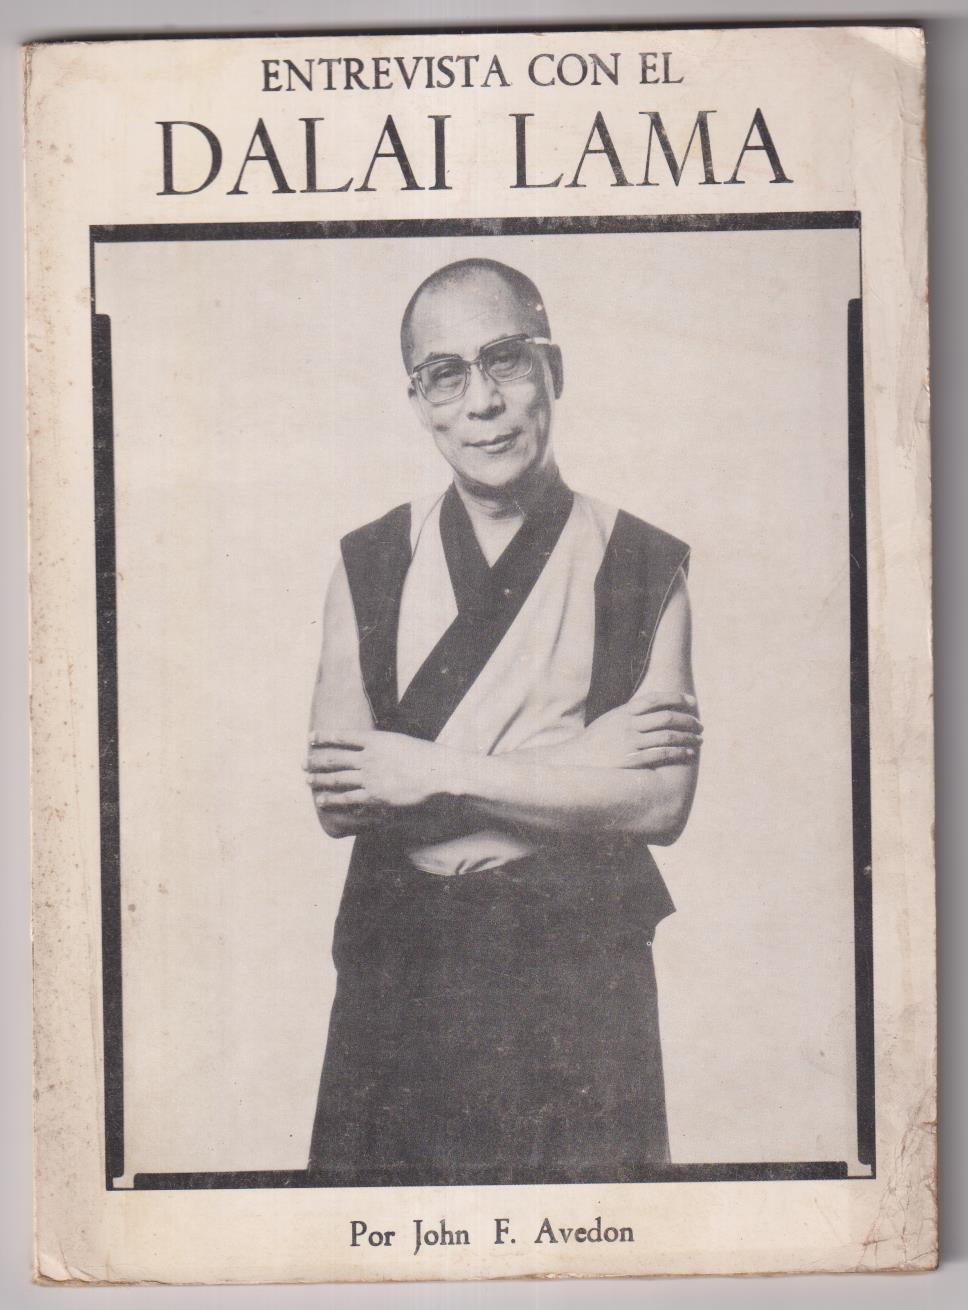 Entrevista con el Dalai Lama por John F. Avedon. Publicaciones Dharma 1982